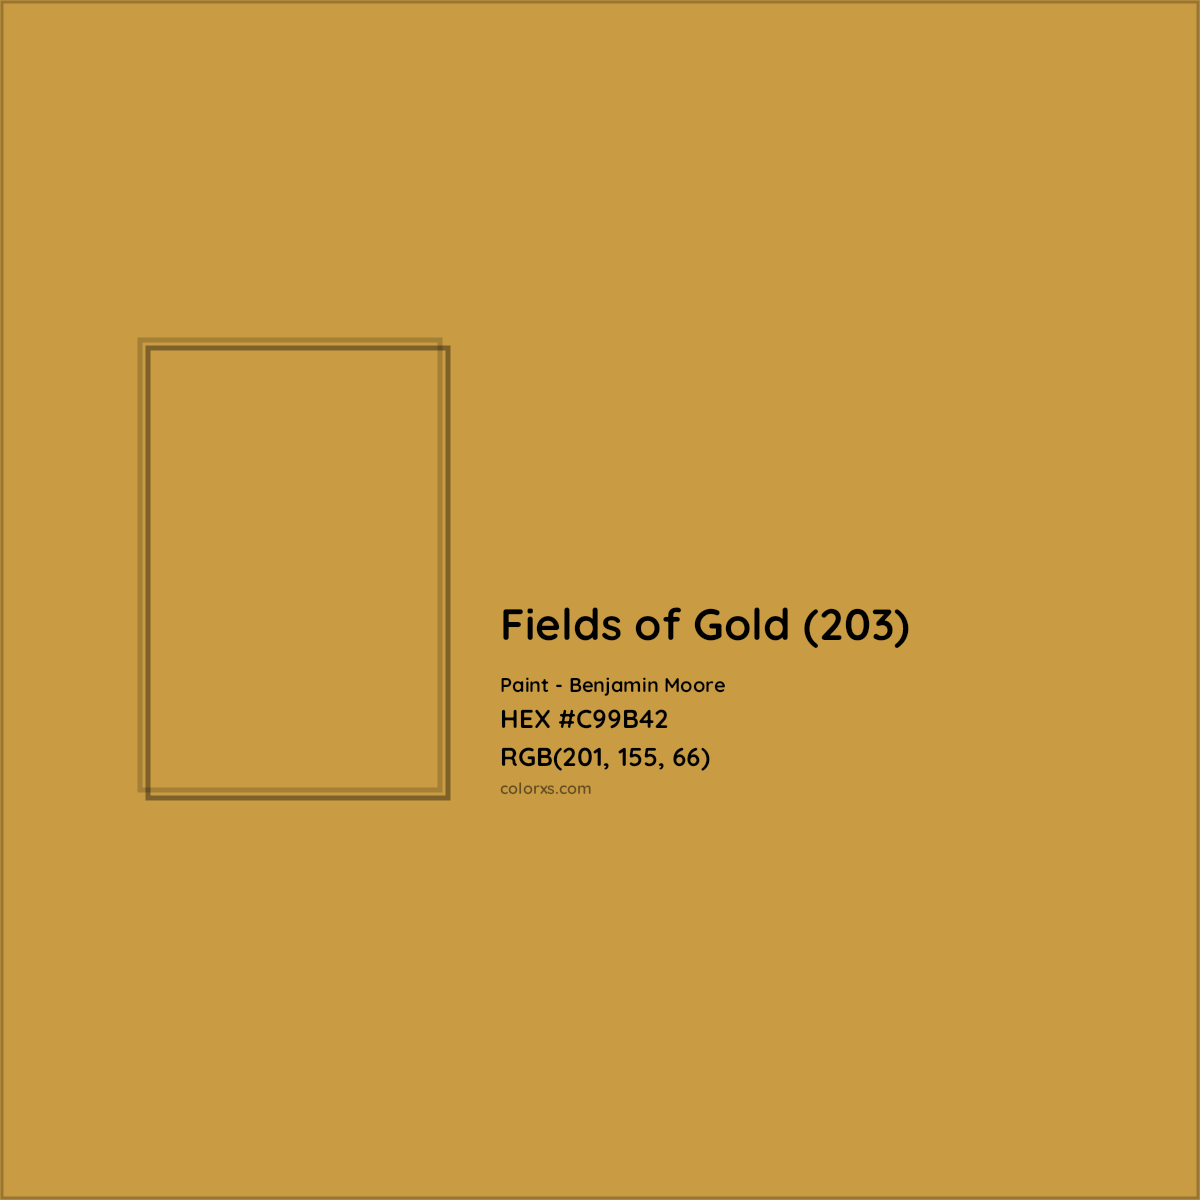 HEX #C99B42 Fields of Gold (203) Paint Benjamin Moore - Color Code